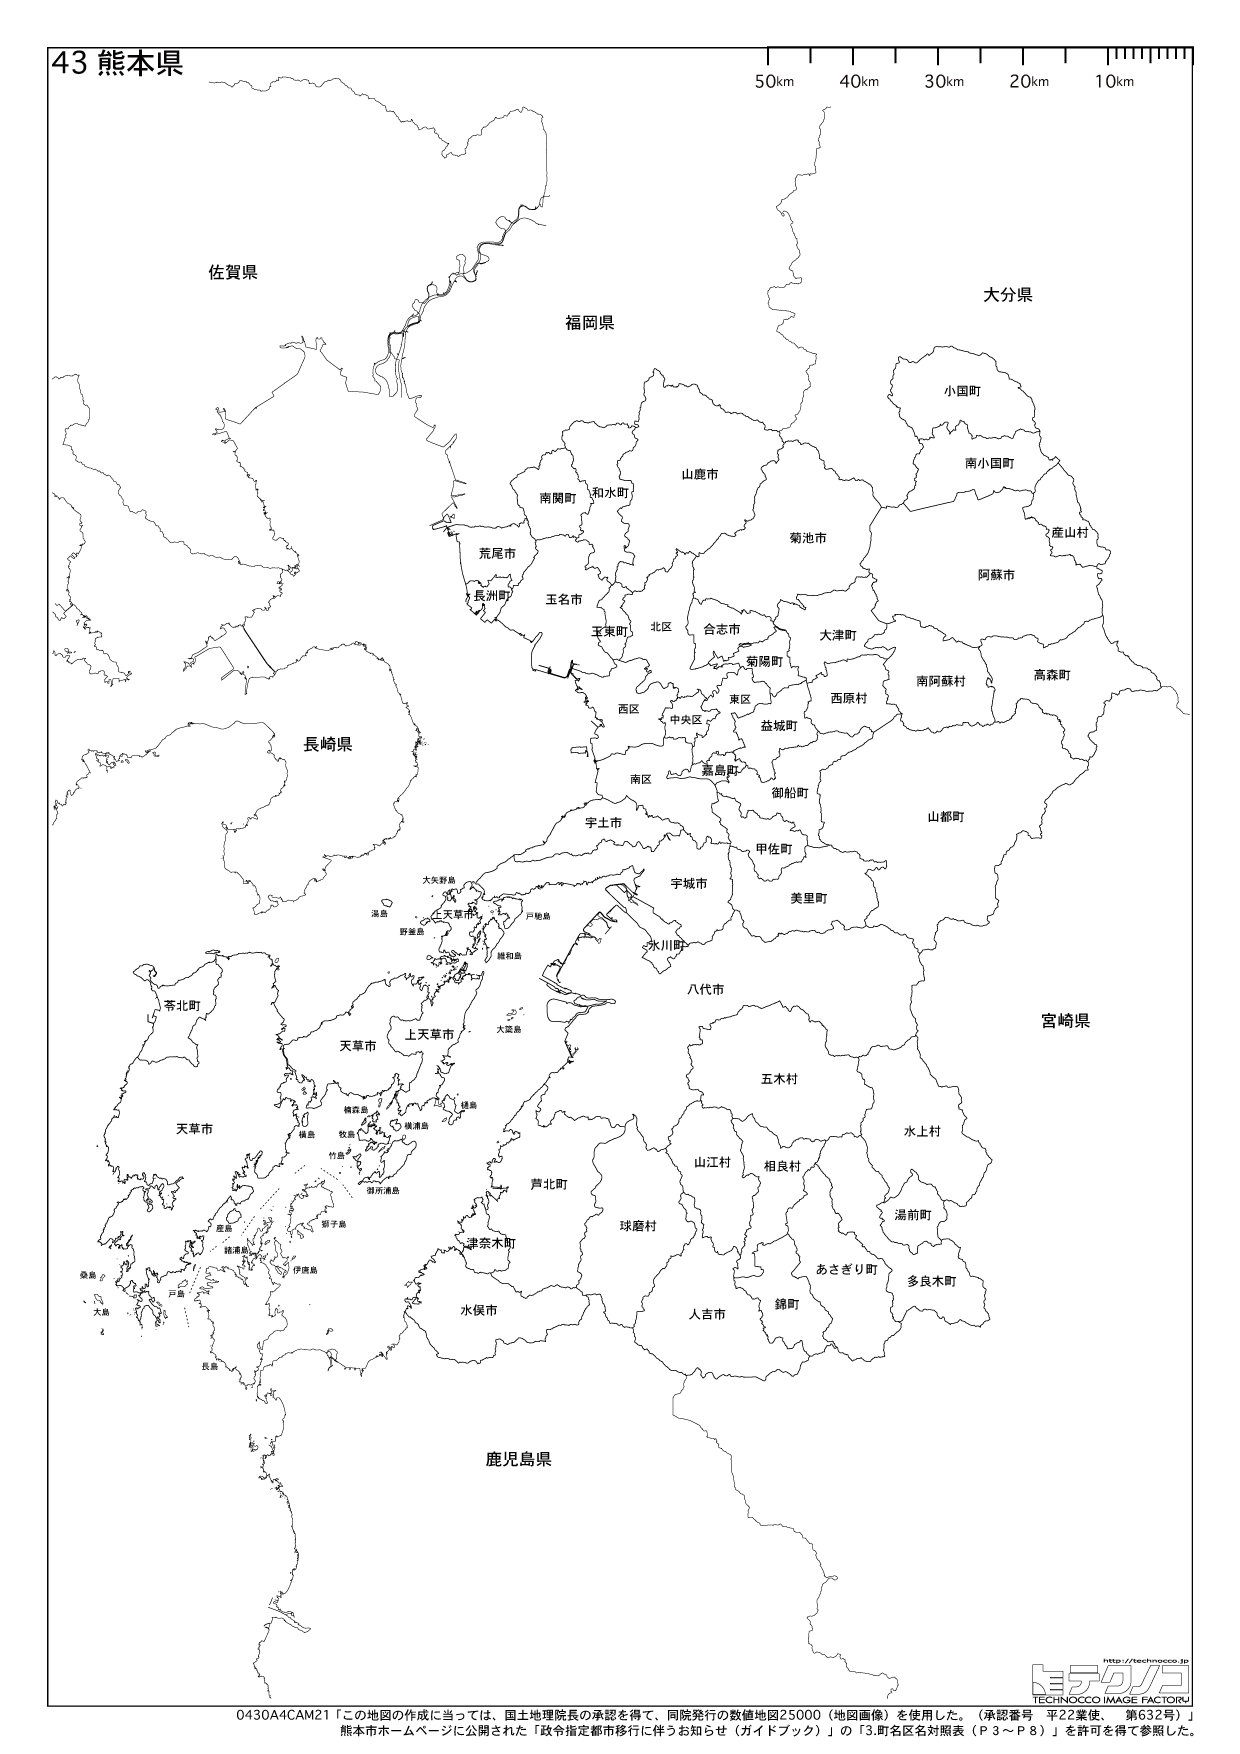 熊本県の白地図と市町村の合併情報